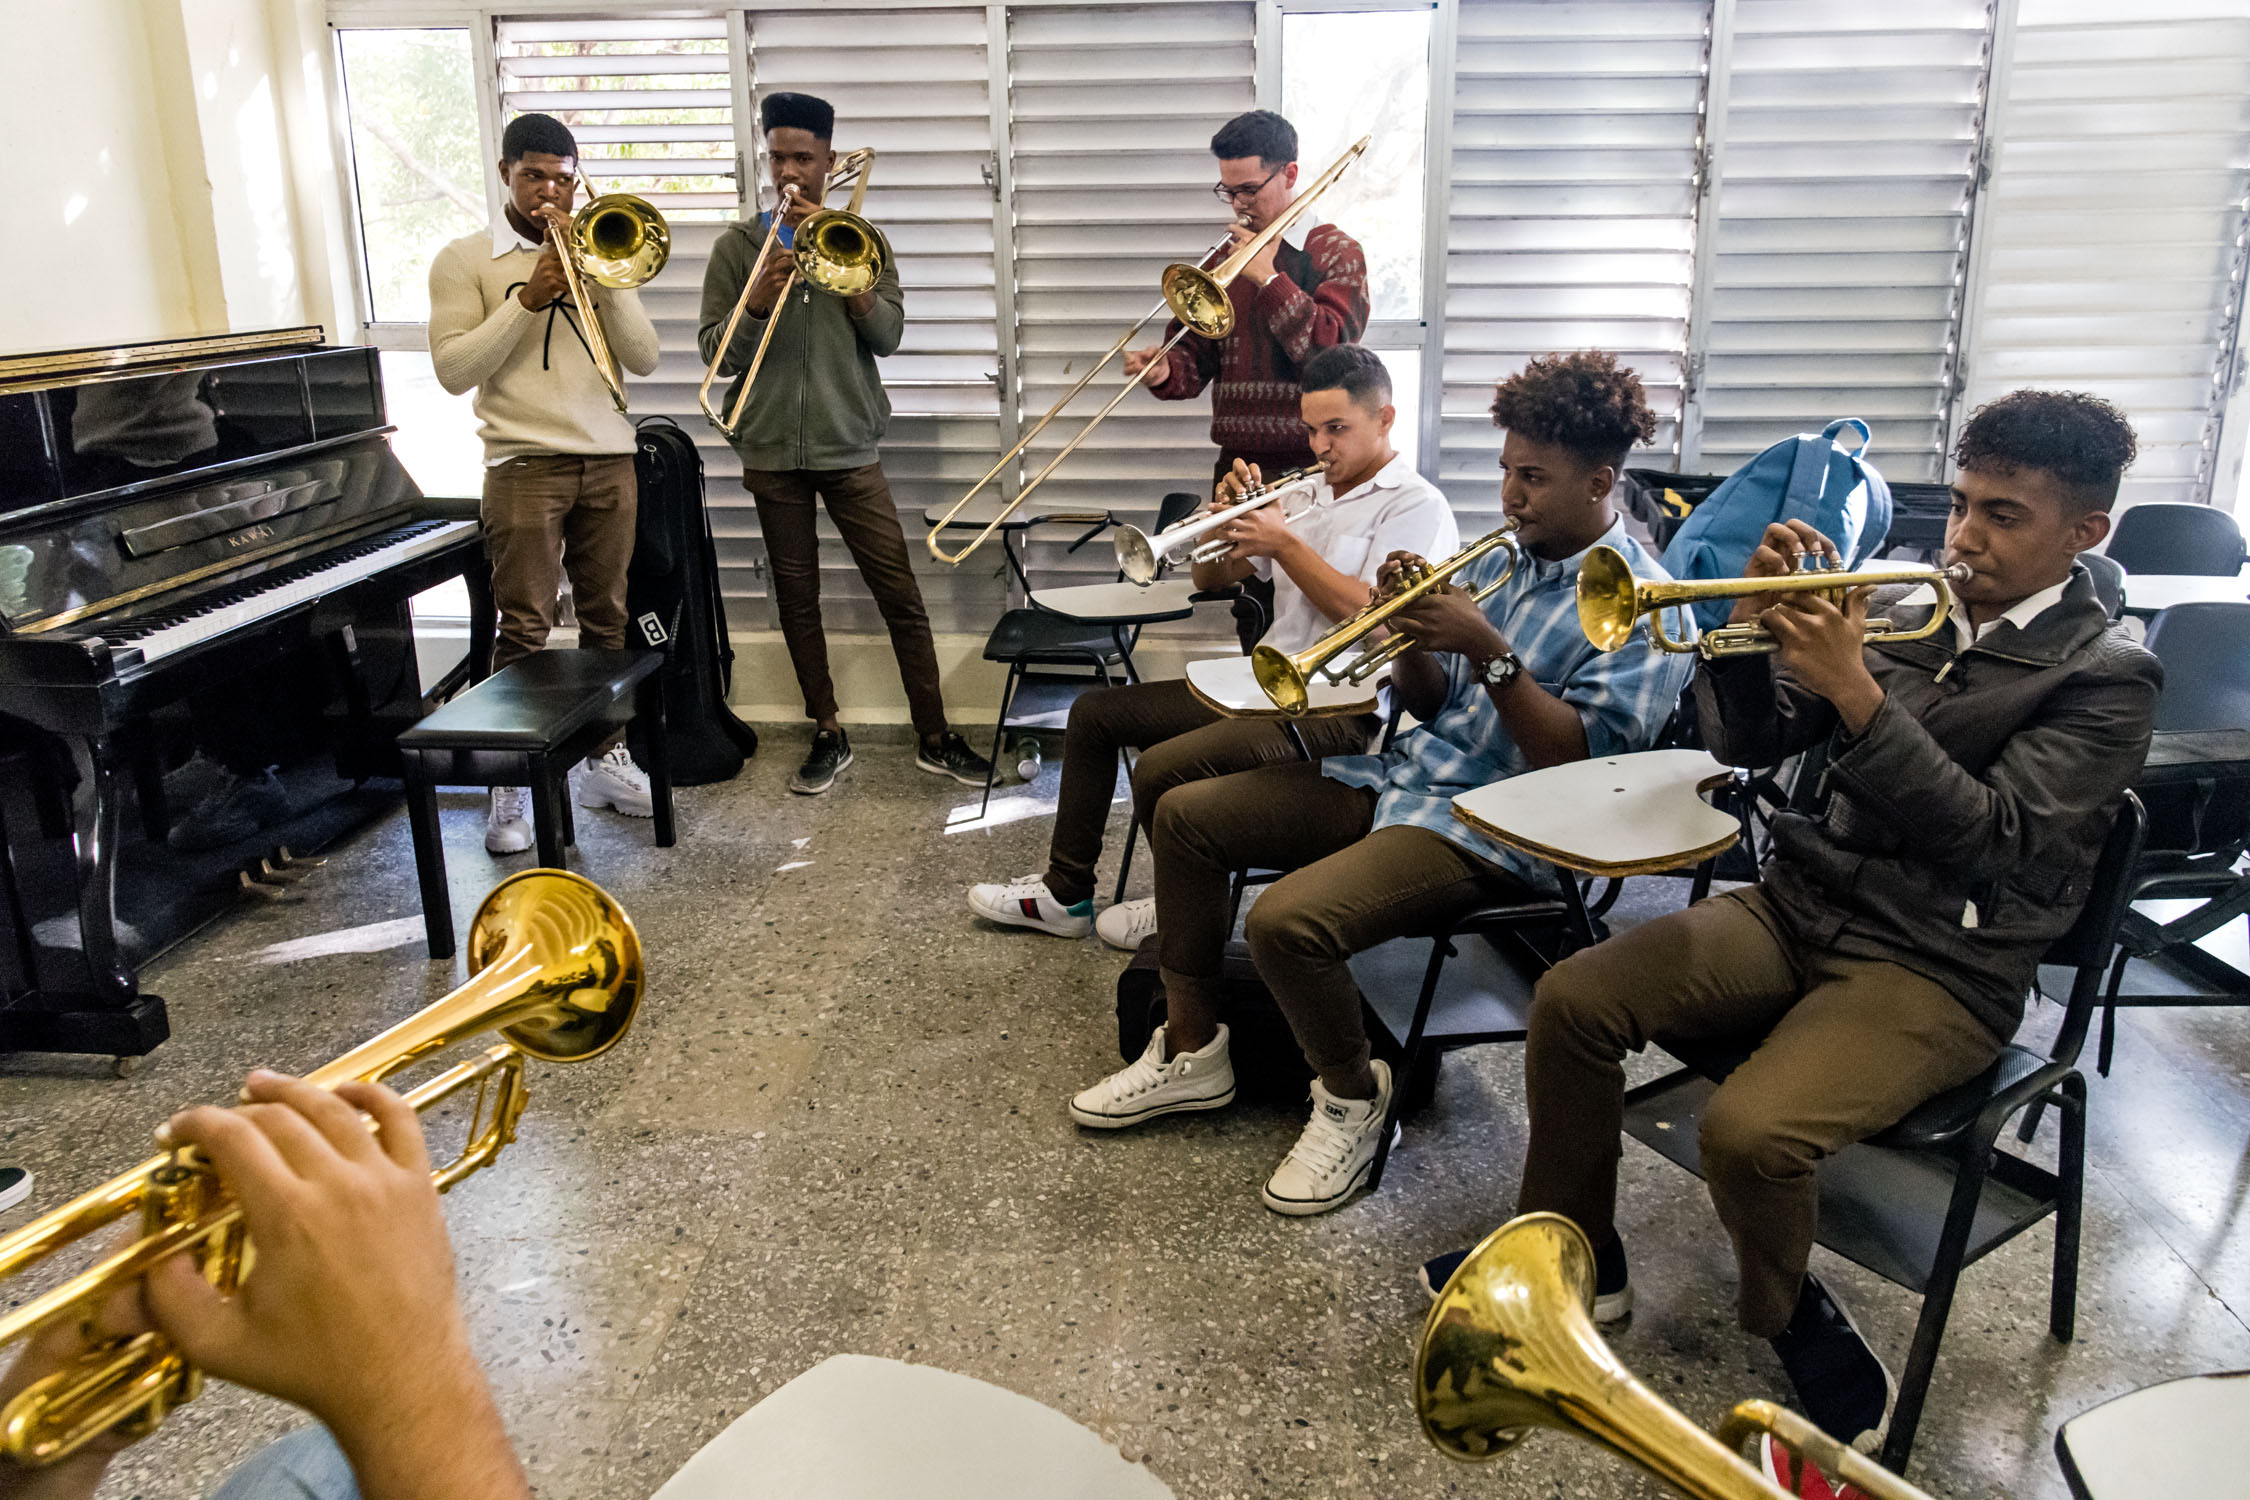 Brass students at Escuela Nacional de Arte (La ENA), Havana, Cuba, January 2019 (Photo by David Garten)